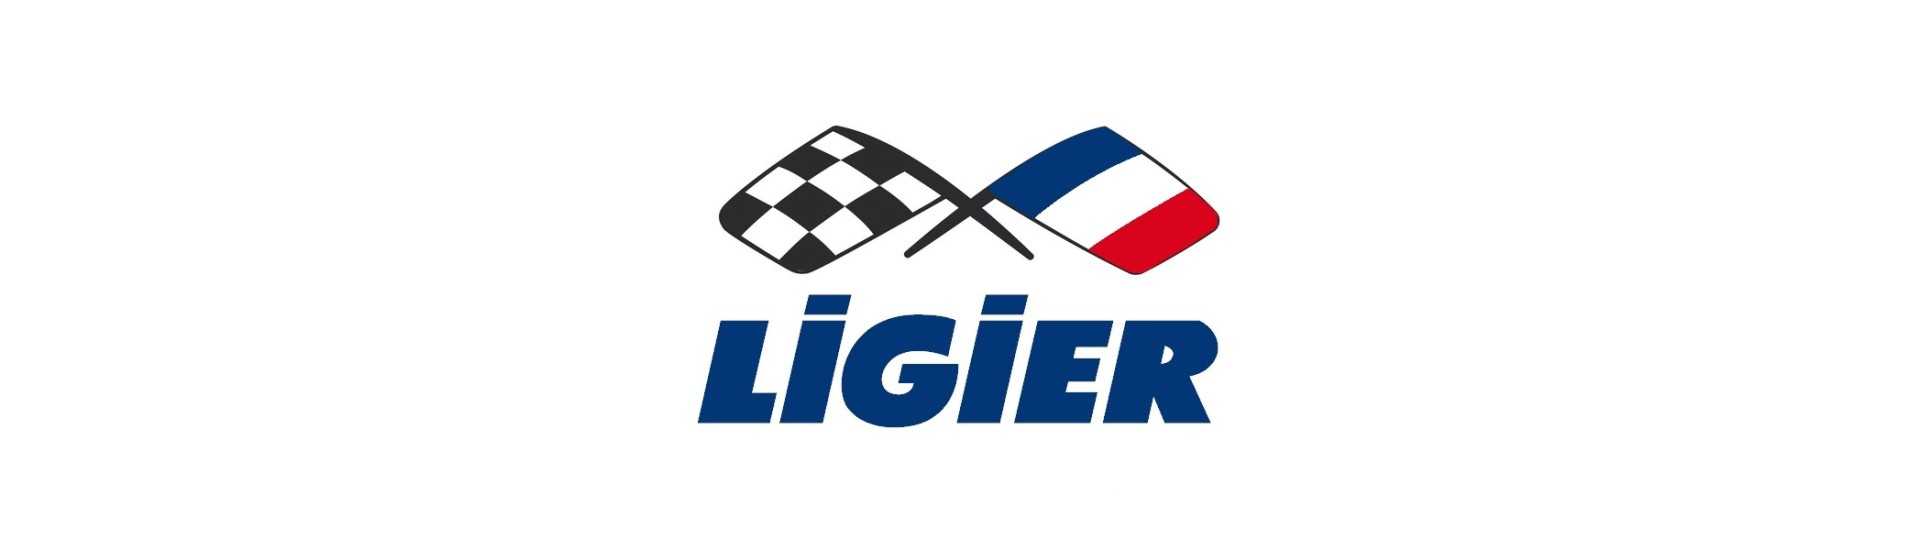 Bästa pris bakbroms kit för bil utan tillstånd Ligier